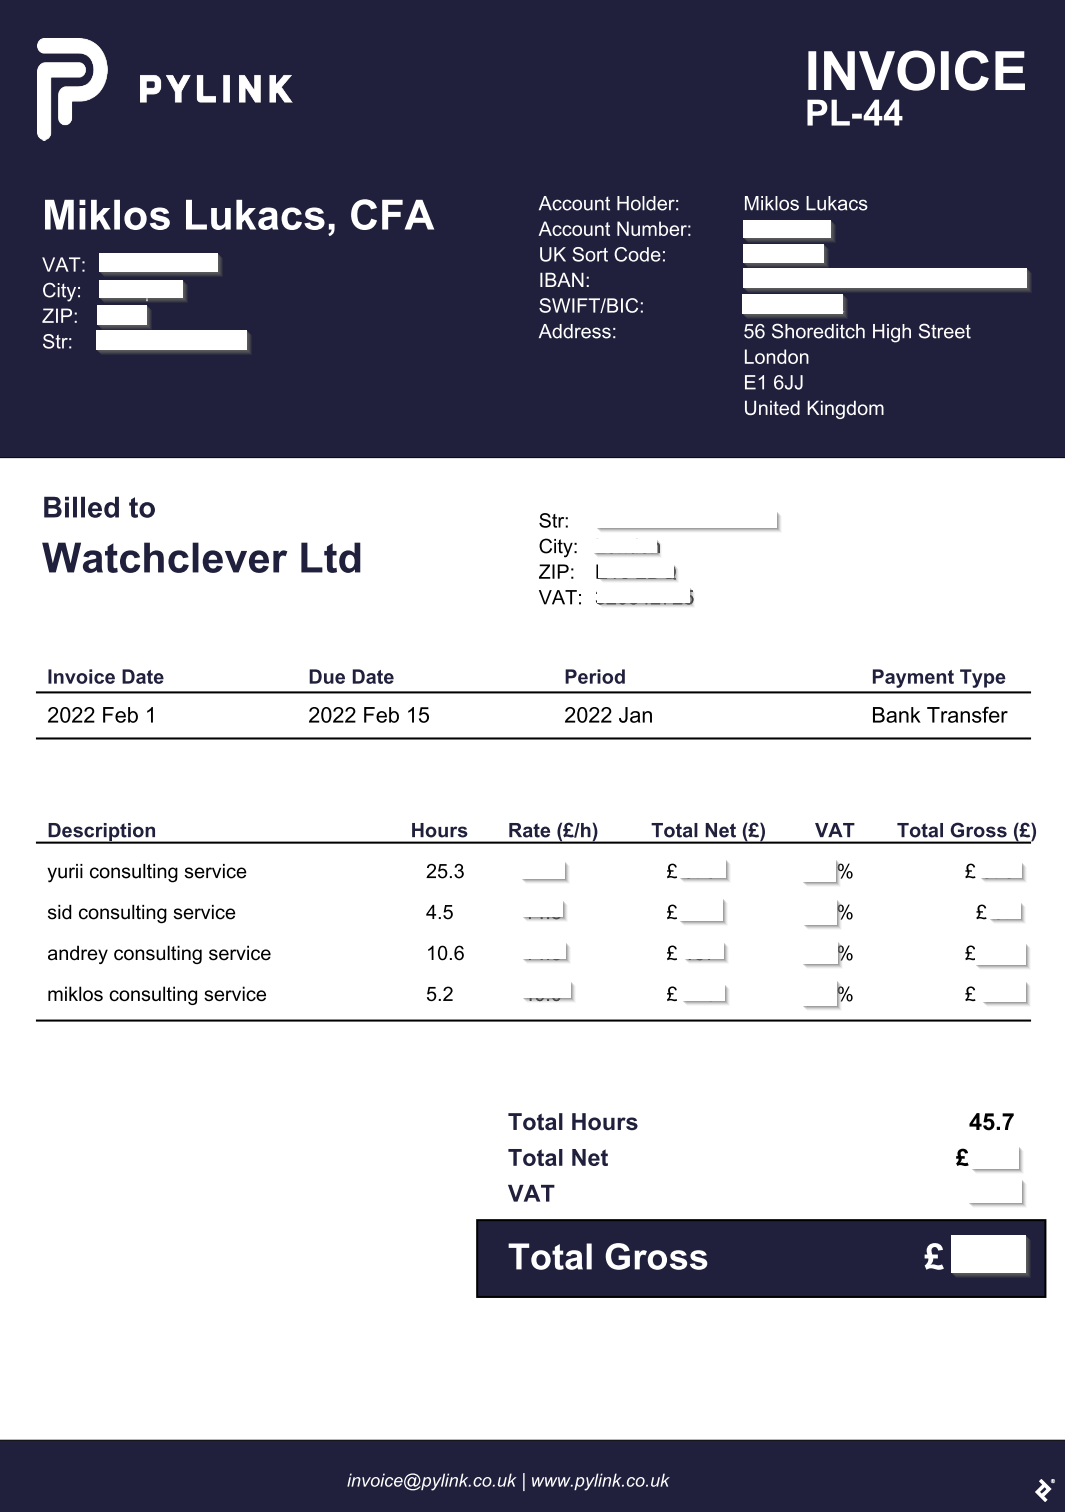 显示了来自Pylink的发票。上面写着“向客户Watchclever Ltd .付款”，并给出了发票日期、到期日、开票期限和付款类型（银行转账）。它还显示了四名顾问各自的工作时间以及总计45.7小时的工作时间。